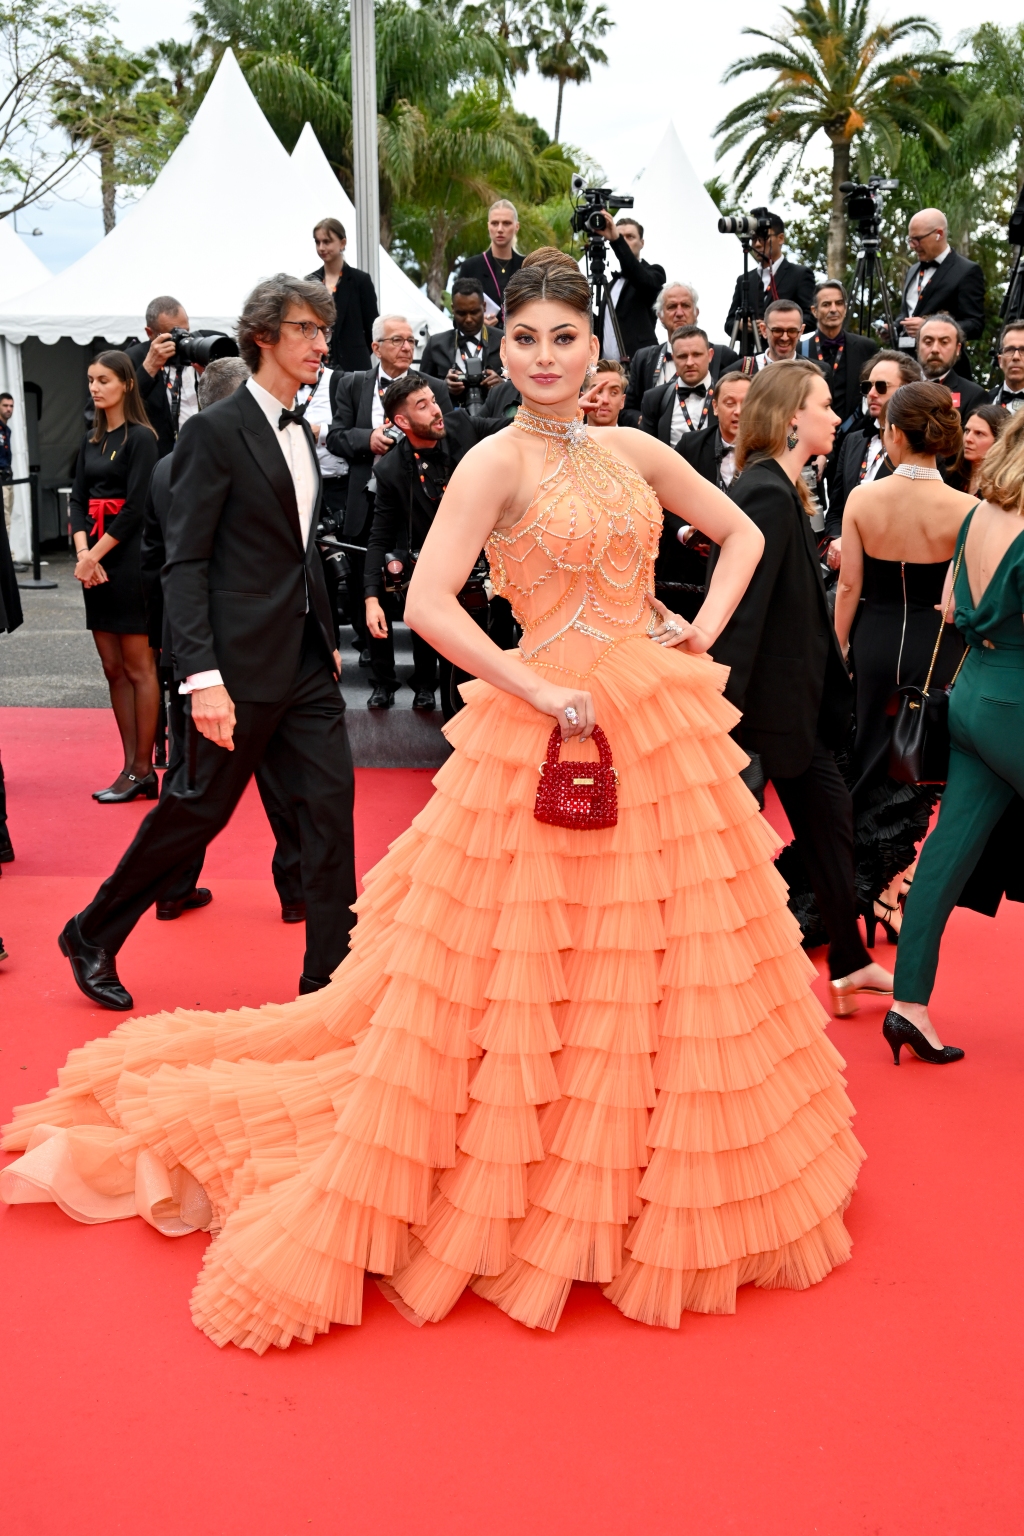 Con gái Jude Law diện đồ táo bạo, đọ sắc Rosé (BlackPink) trên thảm đỏ Cannes - Ảnh 8.